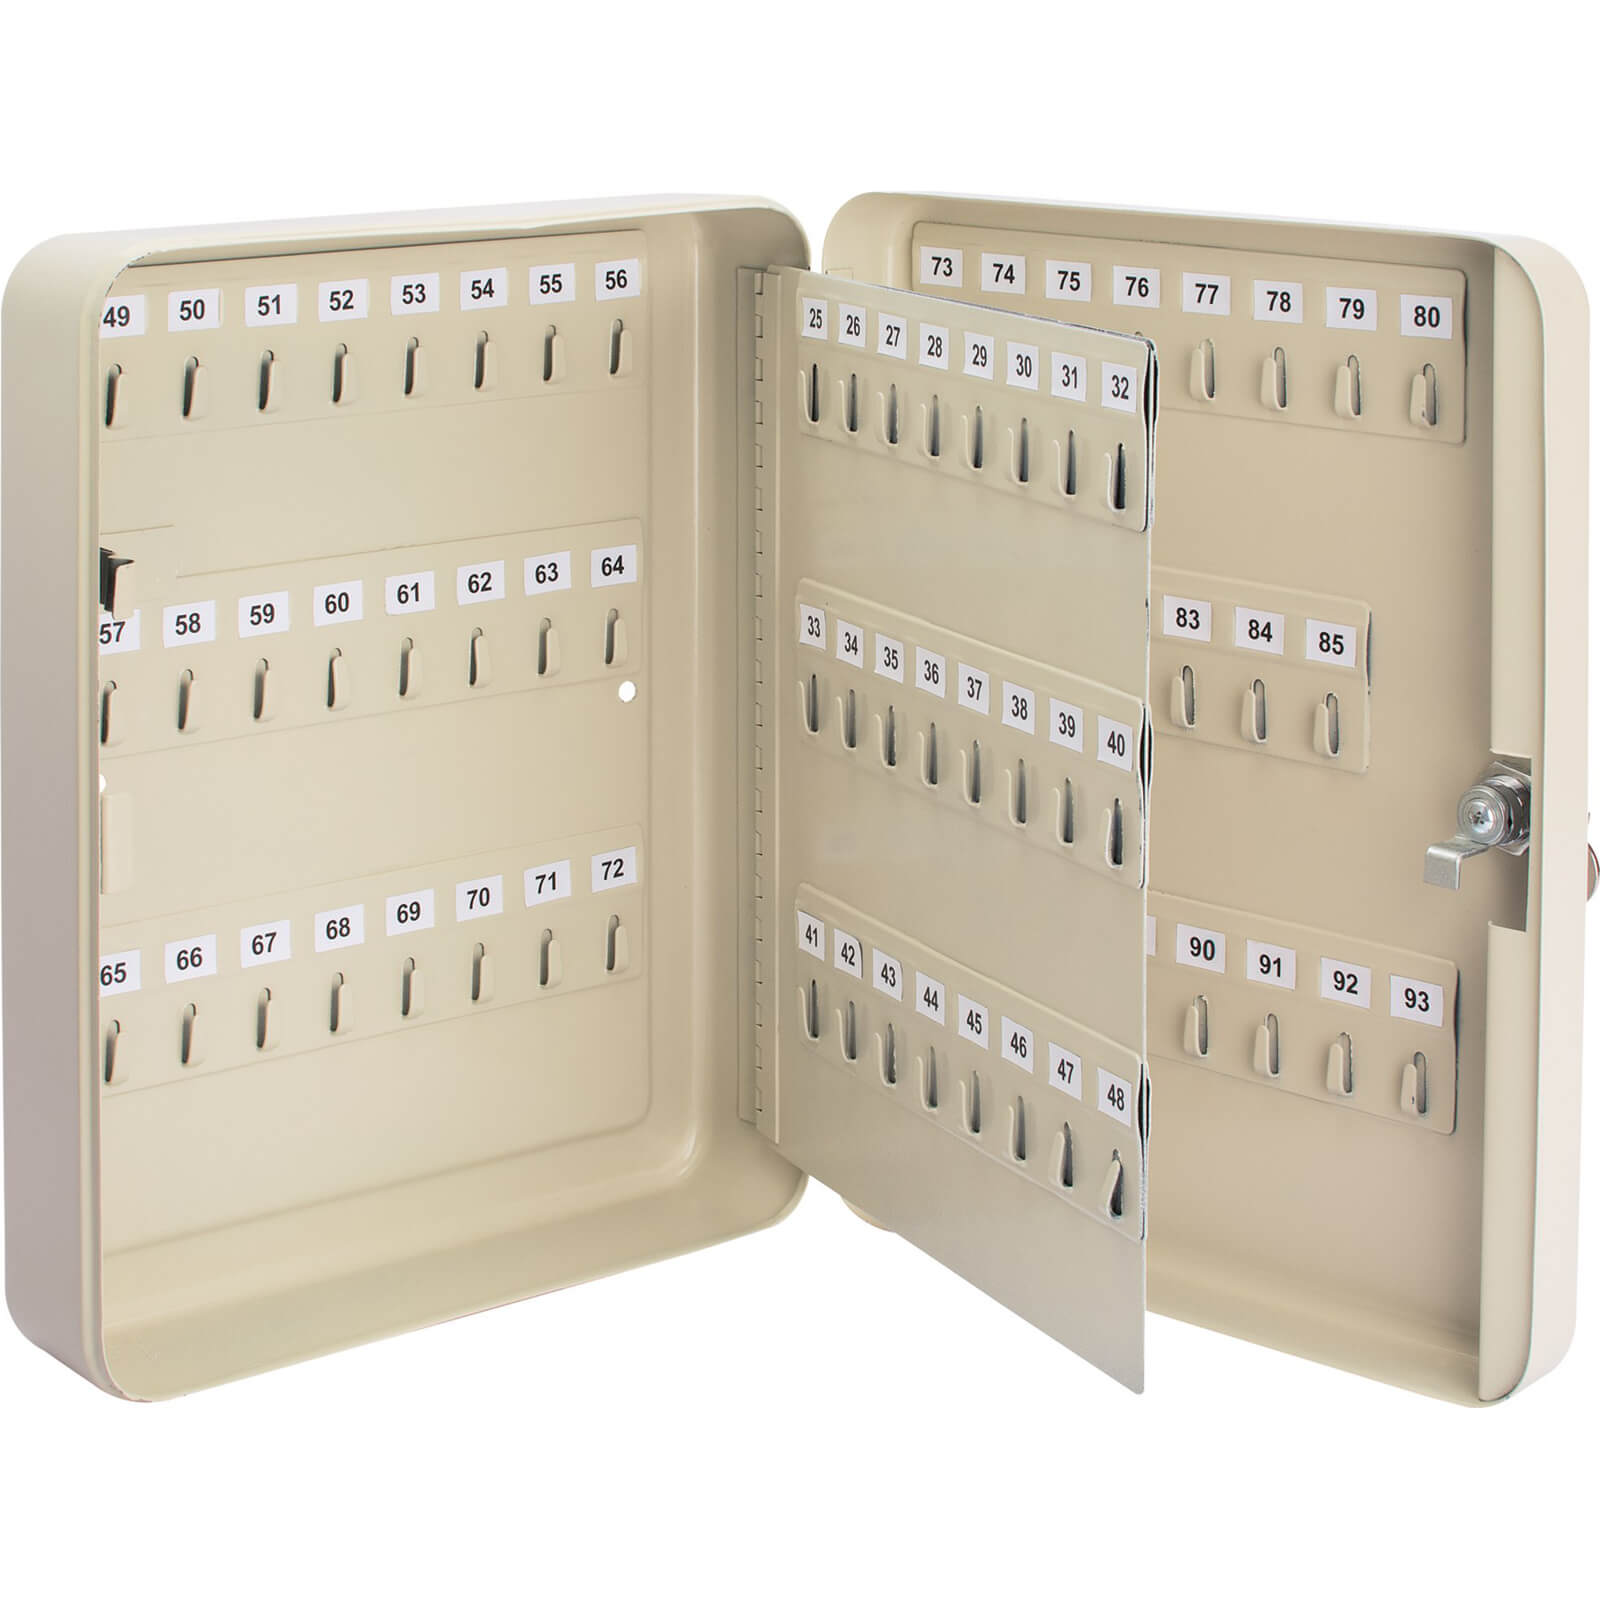 Image of Draper 93 Hook Key Cabinet Safe